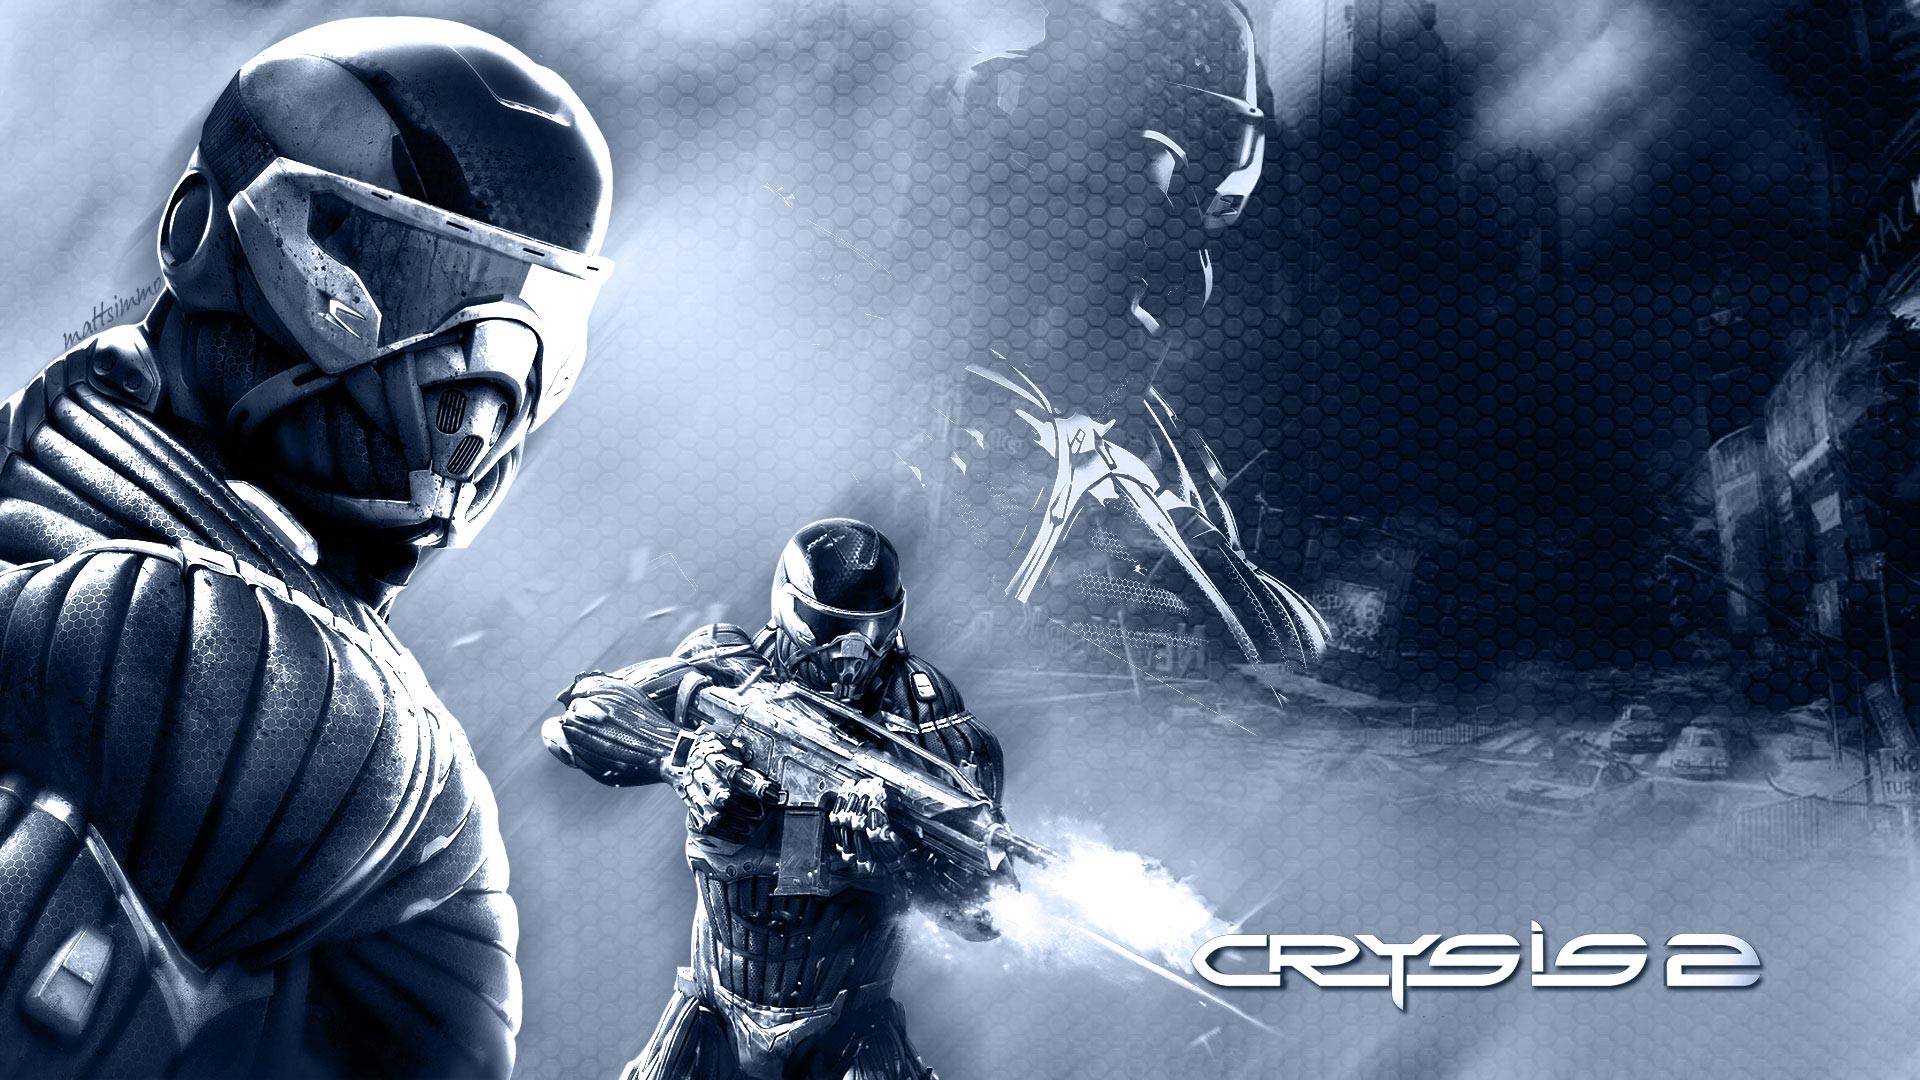 Crysis Wallpaper In Full 1080p HD Gamingbolt Video Game